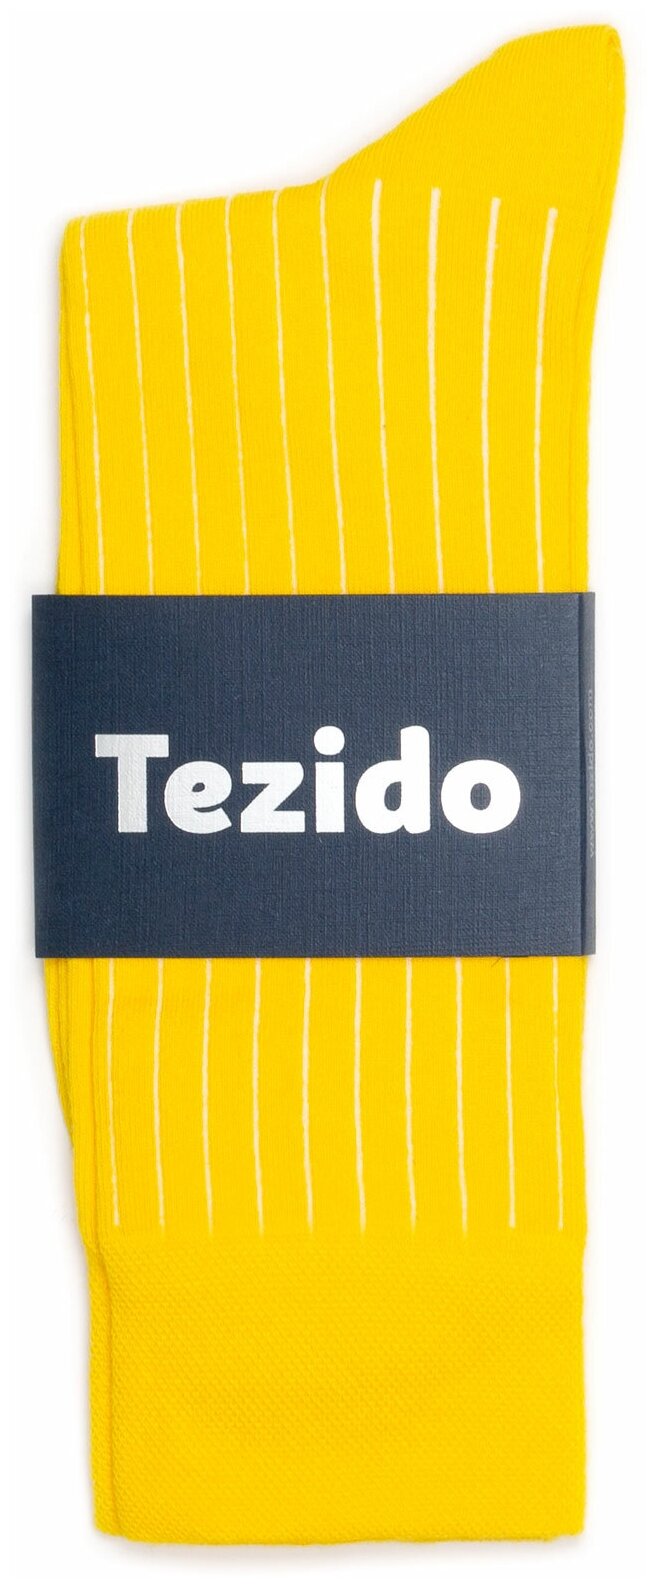 Носки Tezido